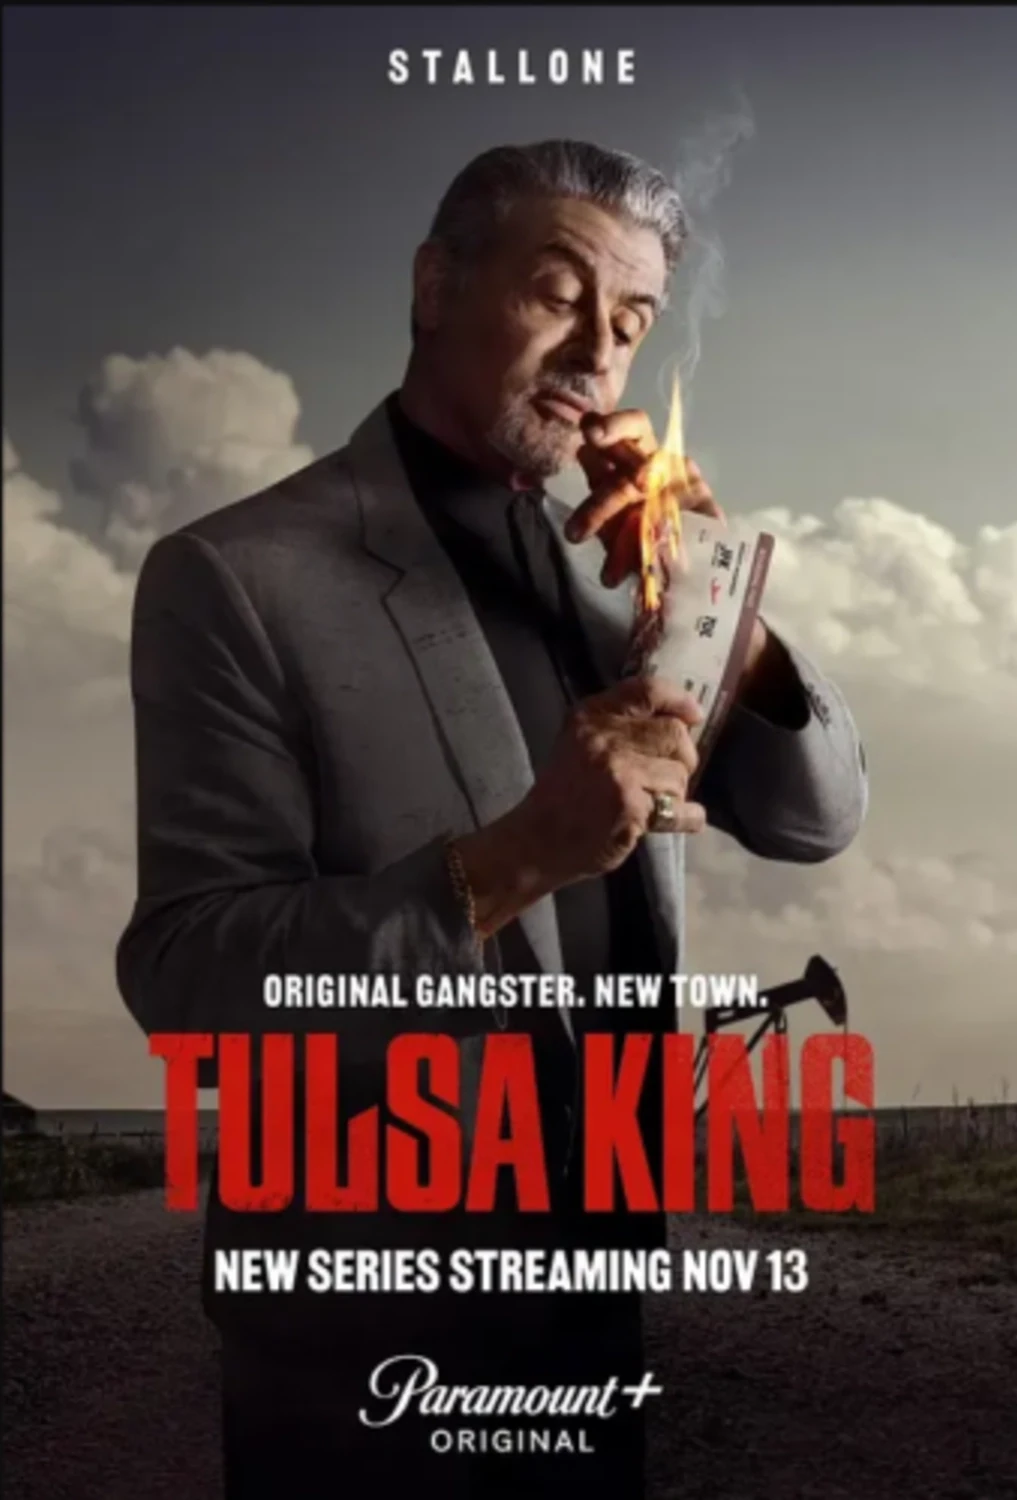 Tulsa King (7 day DVD rental)